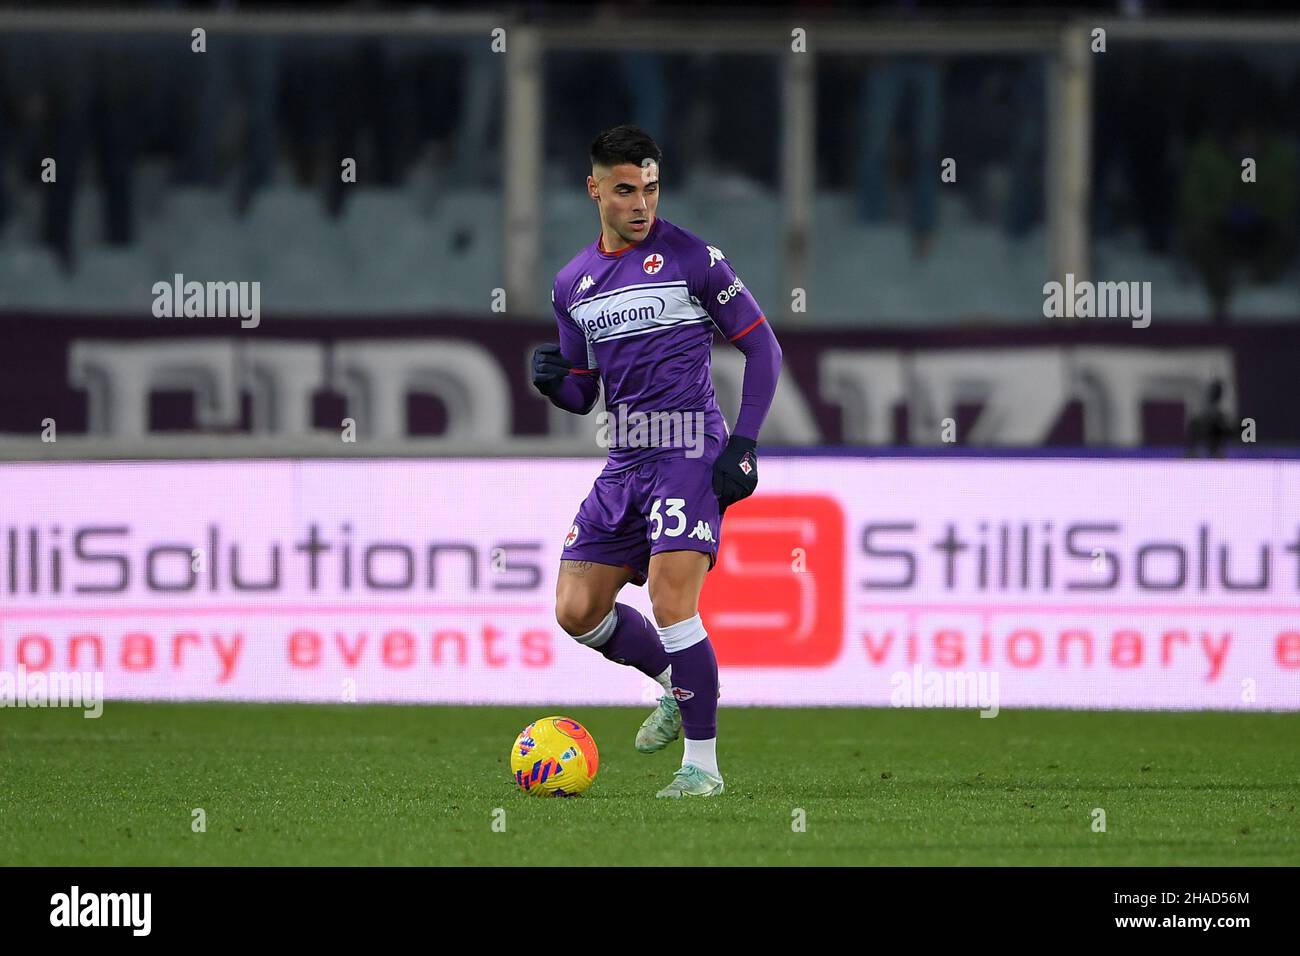 FIRENZE, ITALIA - DICEMBRE 11: Riccardo Sottil di ACF Fiorentina in azione durante la Serie A match tra ACF Fiorentina e US Salernitana a Stad Foto Stock